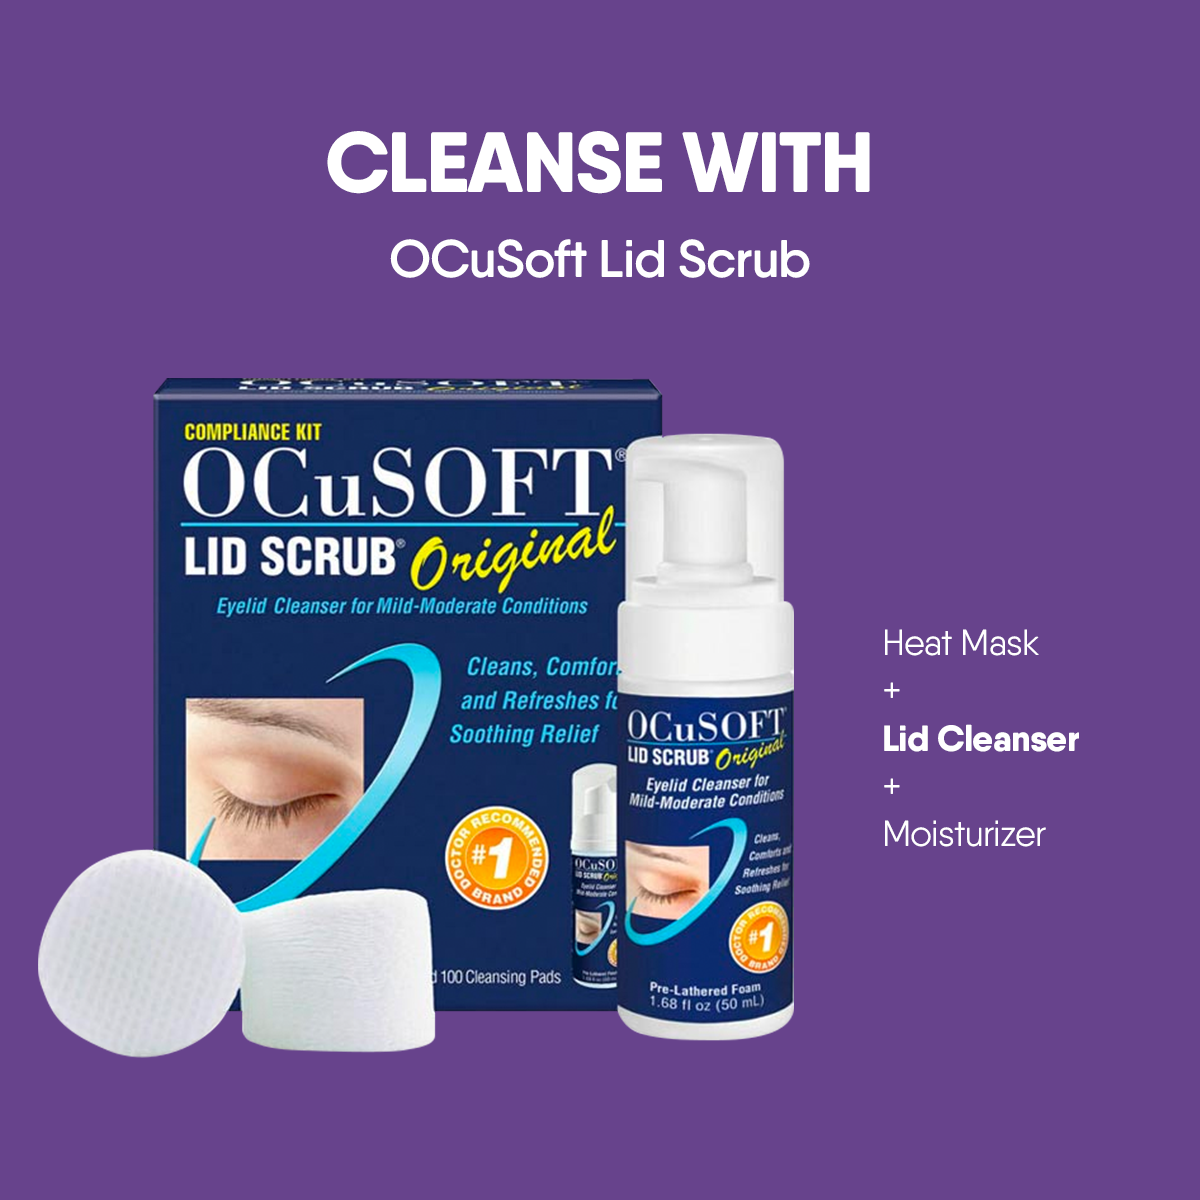 OCuSOFT Dry Eye Kit